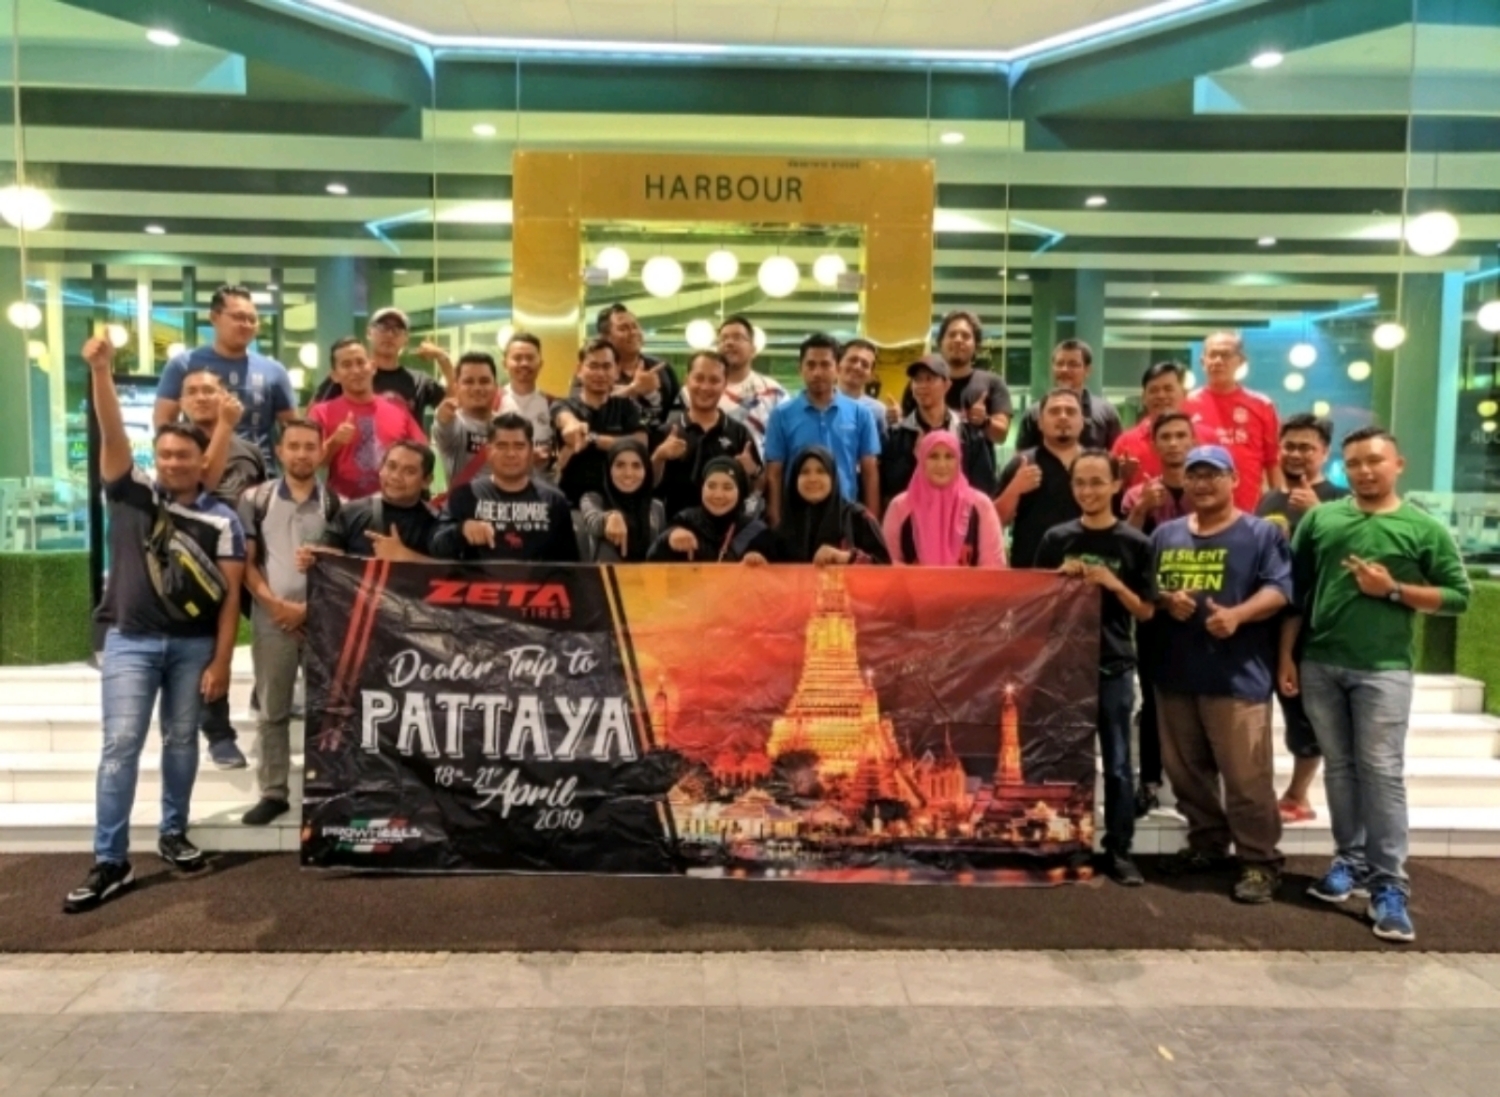 Lawatan ke Kilang Zeta Pattaya